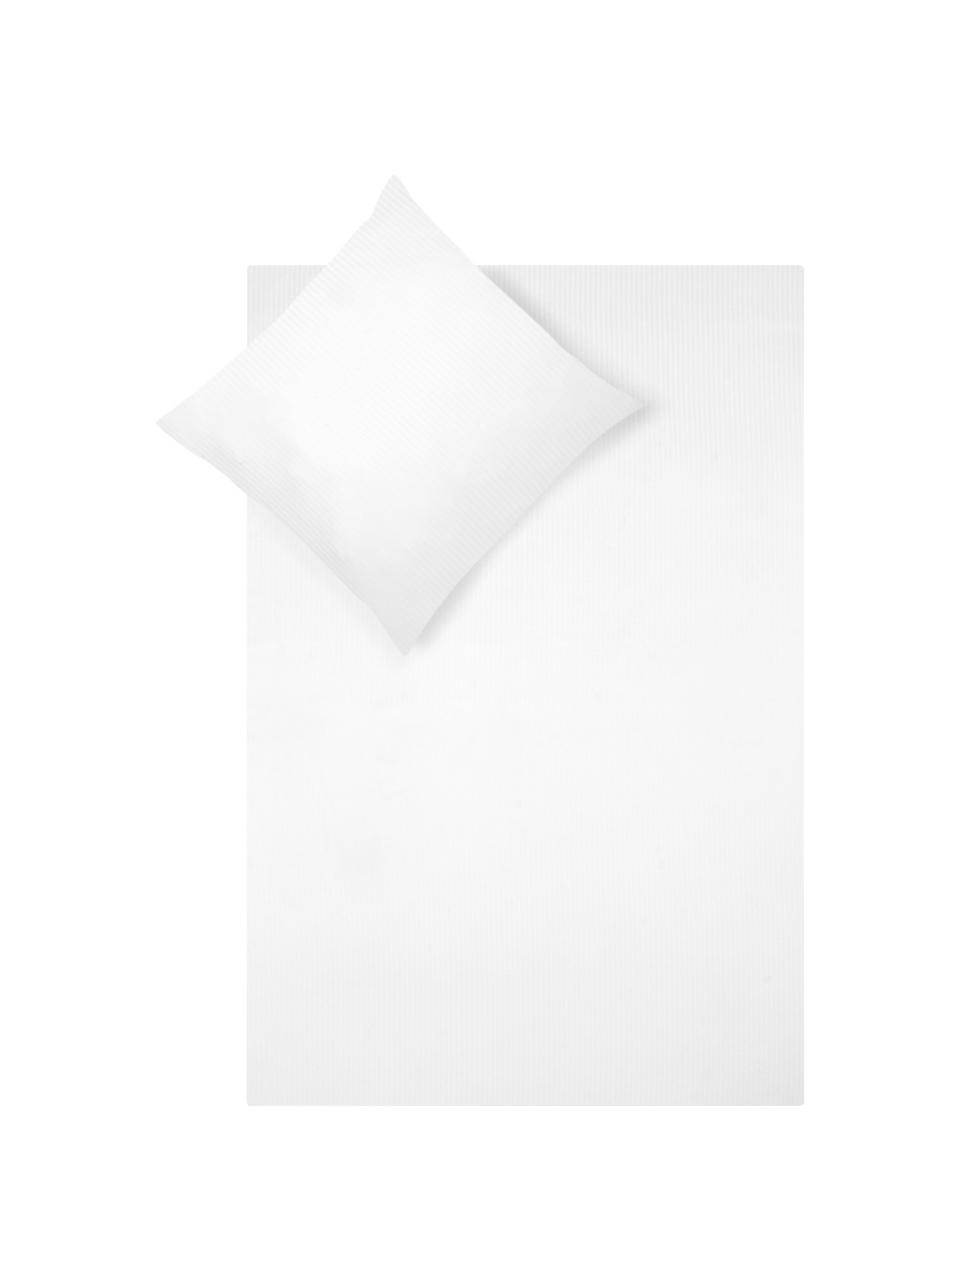 Posteľná bielizeň so saténovými pruhmi Stella, Biela, 155 x 220 cm + 1 vankúš 80 x 80 cm